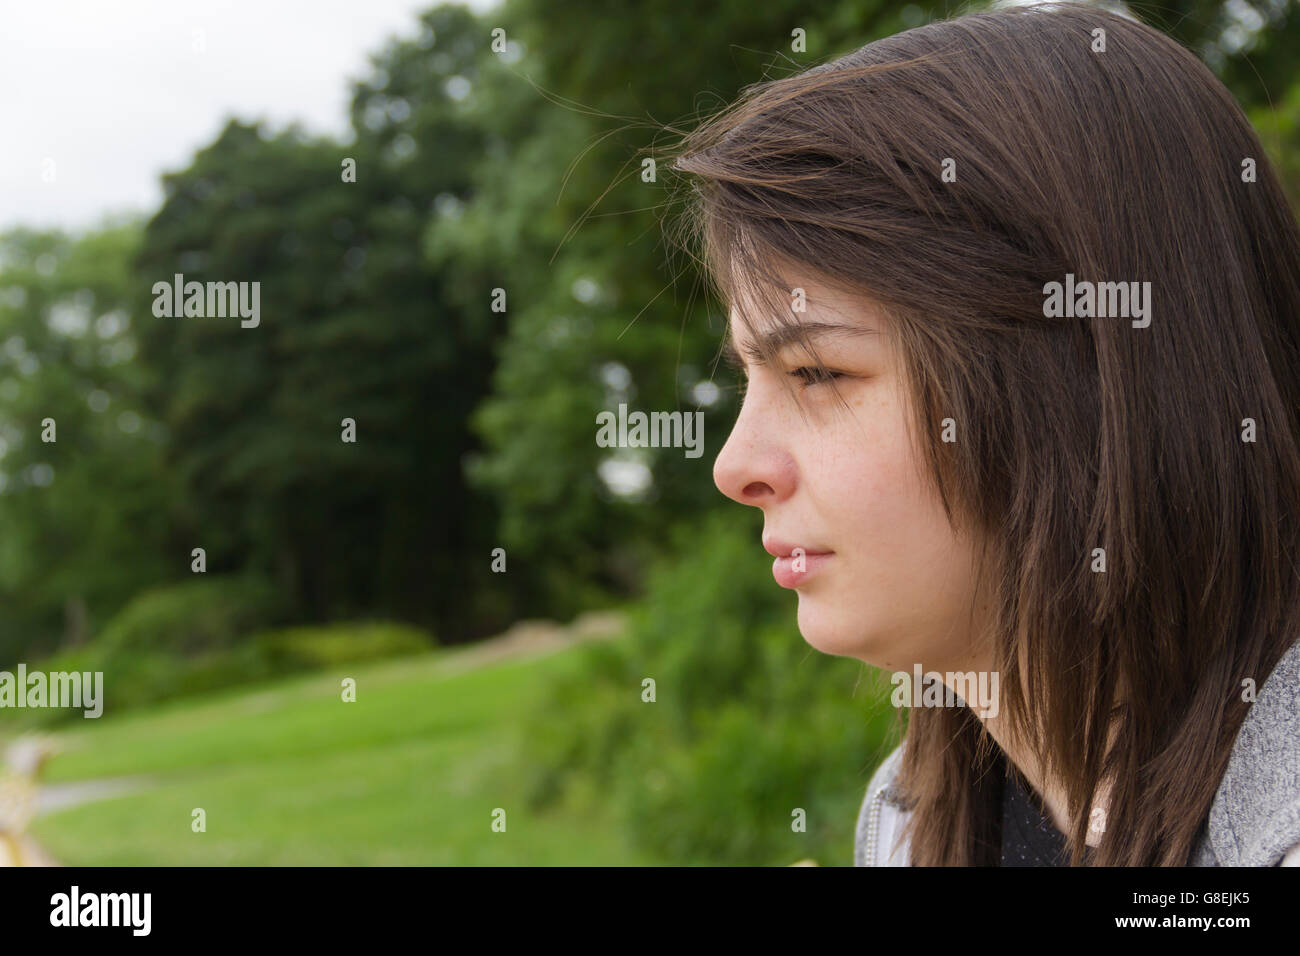 Junge Frau, Erwachsene oder späten Teens, sitzen im Park mit einem feierlichen oder neutralen Ausdruck auf ihrem Gesicht. Stockfoto